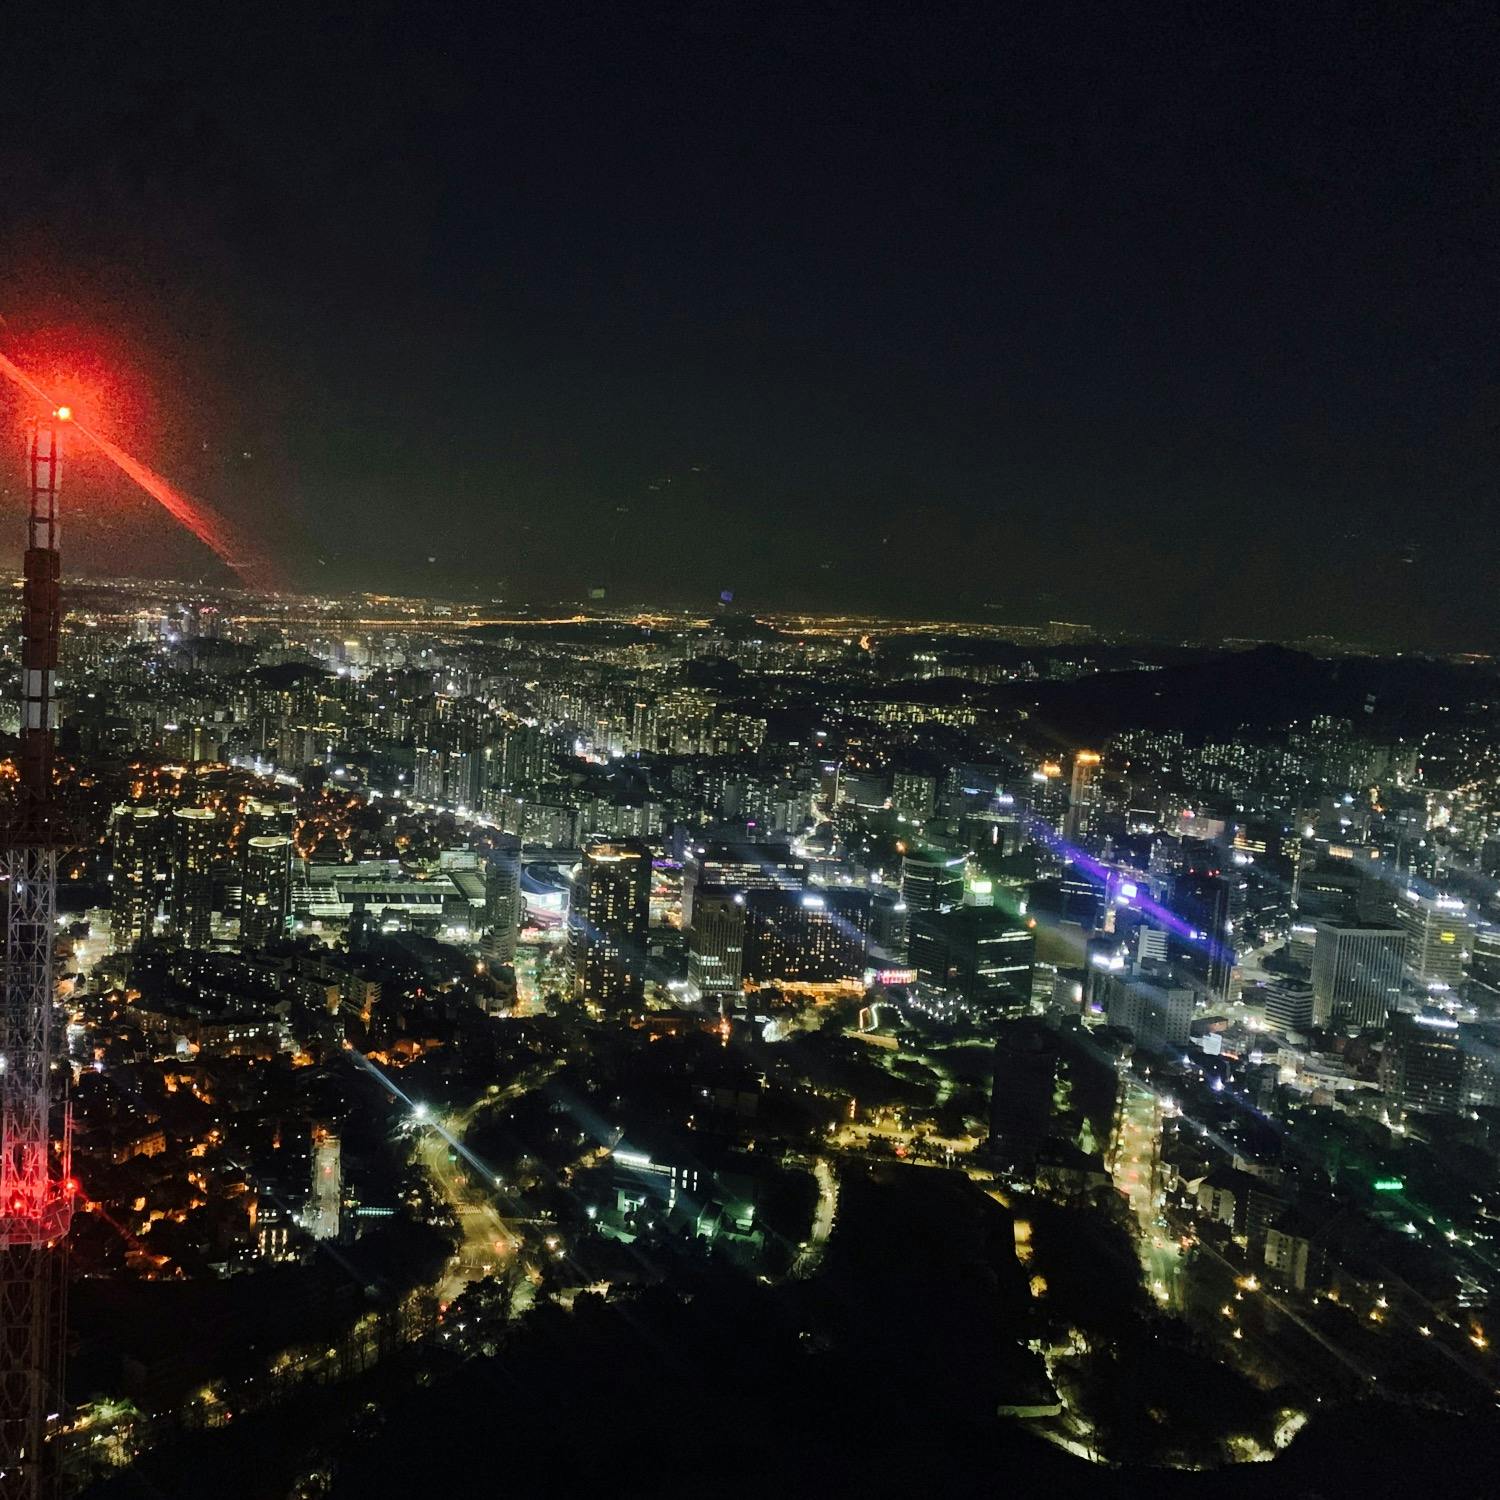 Nソウルタワーの投稿写真 感想 みどころ N 서울타워 Nソウルタワー 明洞駅から少し歩くみた トリップノート